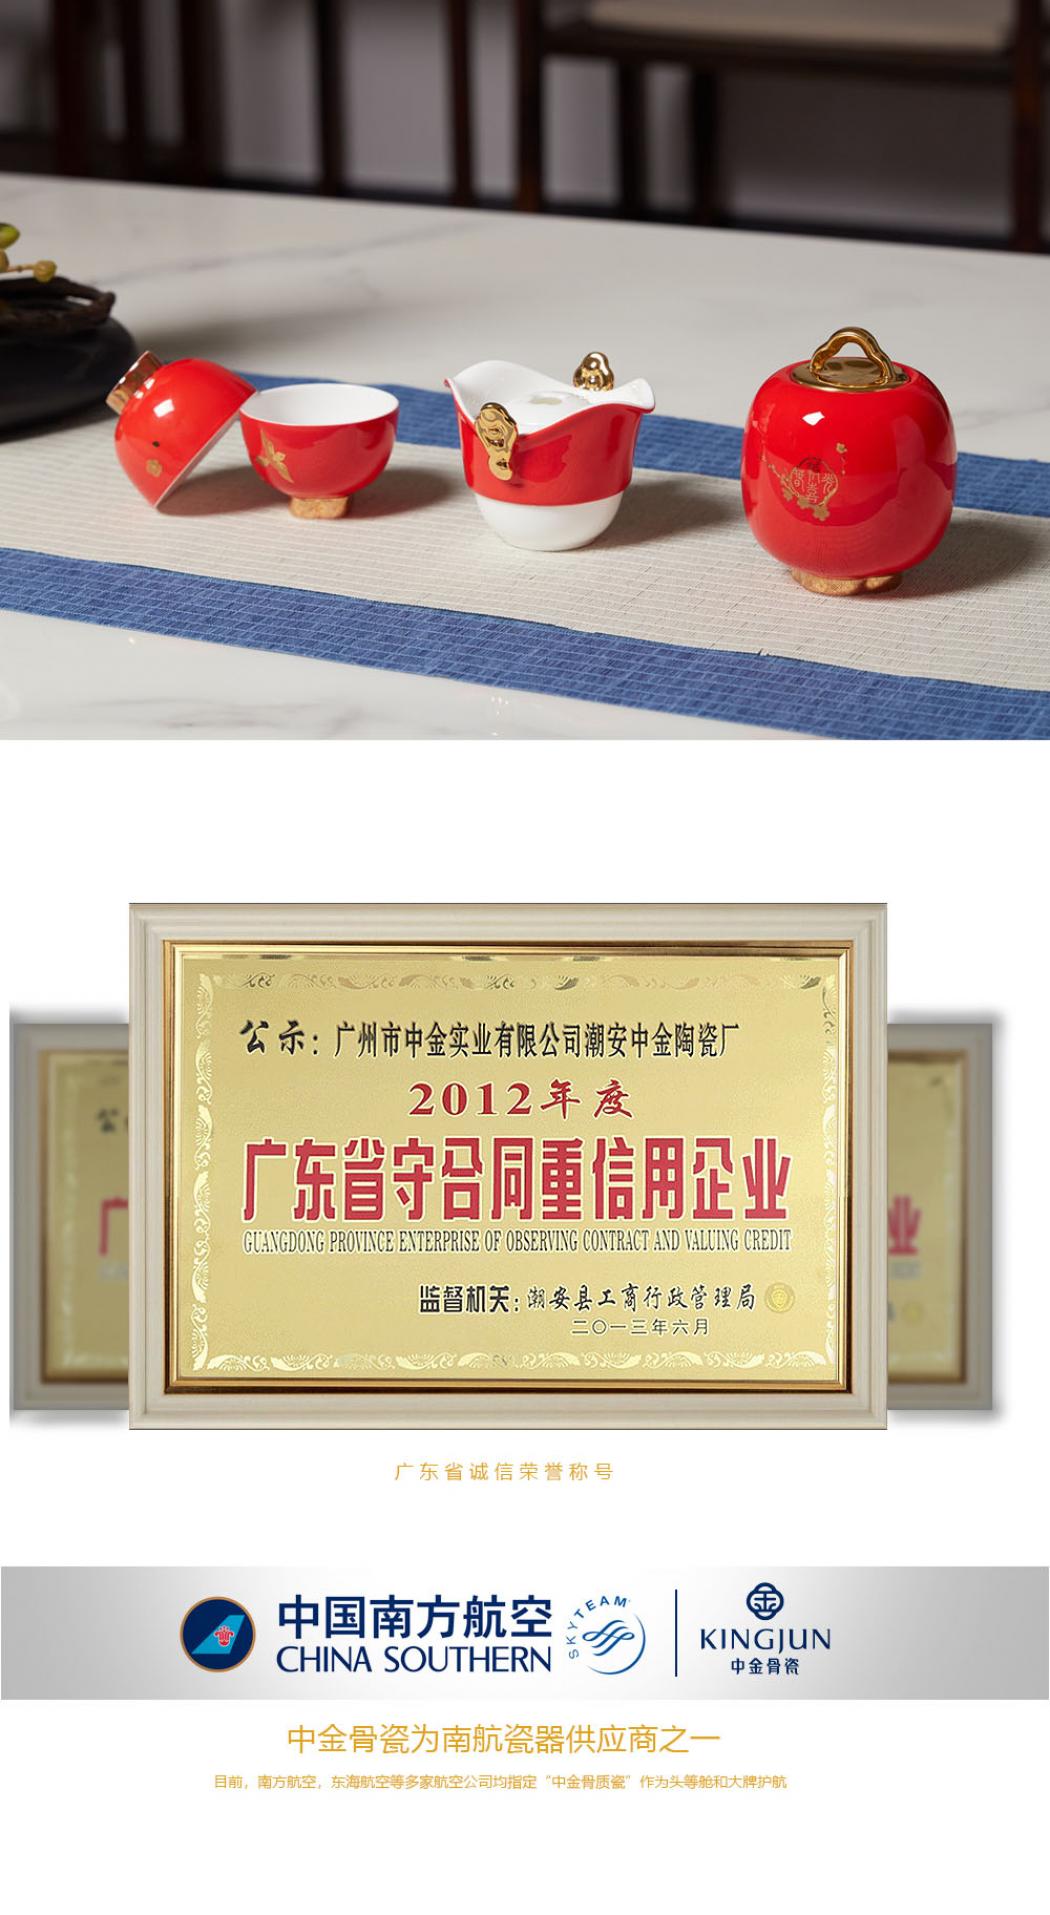 节庆系列模板旅行茶具套组_08.jpg